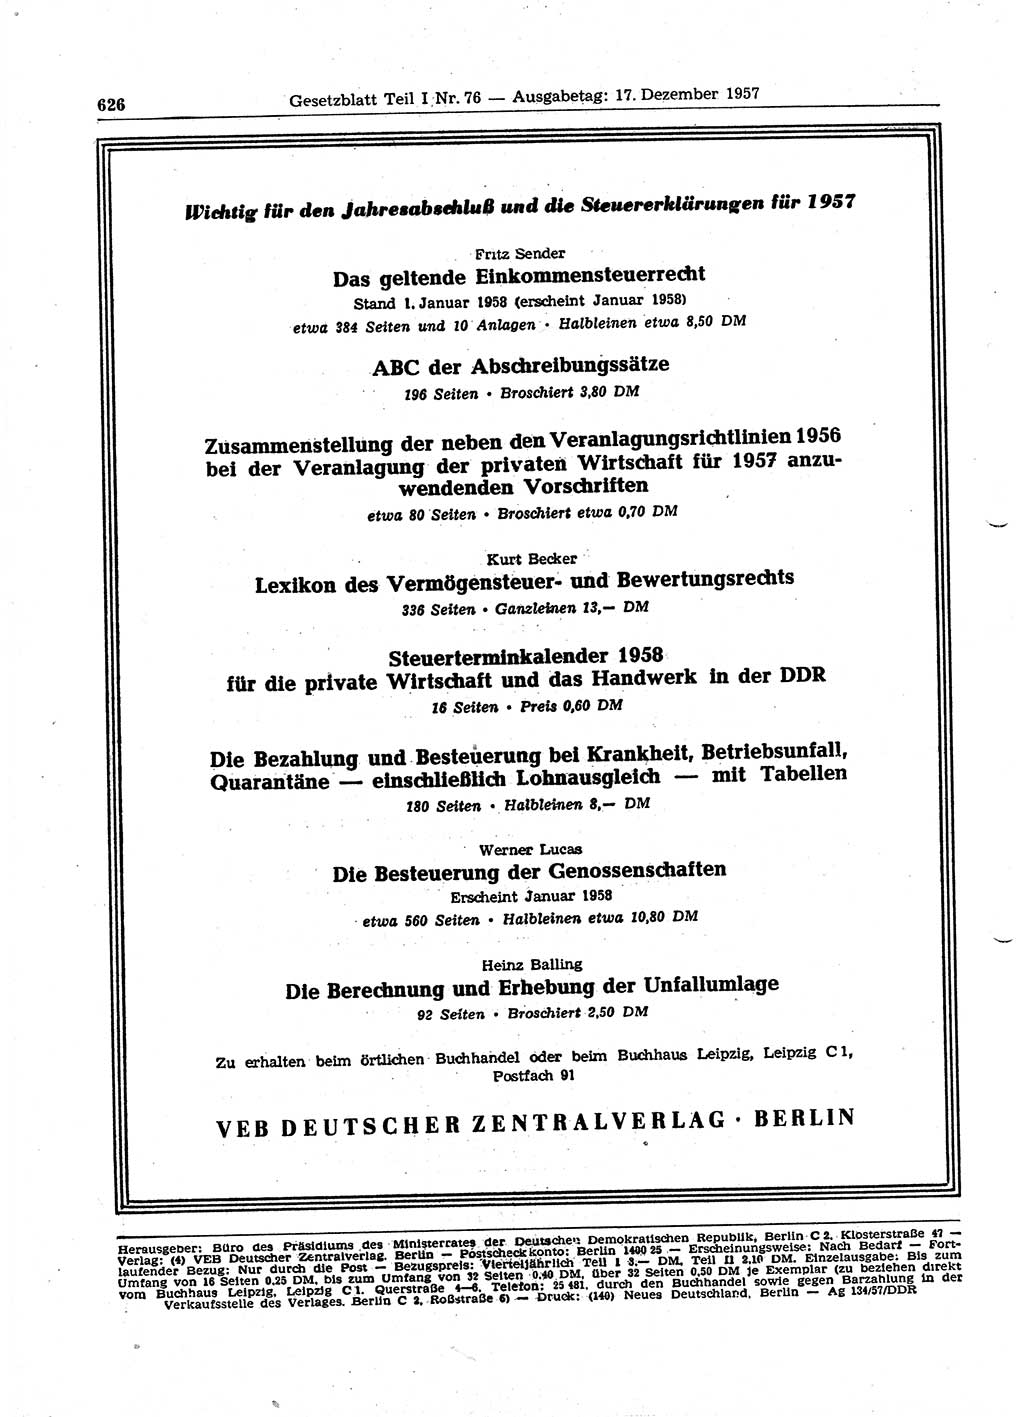 Gesetzblatt (GBl.) der Deutschen Demokratischen Republik (DDR) Teil Ⅰ 1957, Seite 626 (GBl. DDR Ⅰ 1957, S. 626)